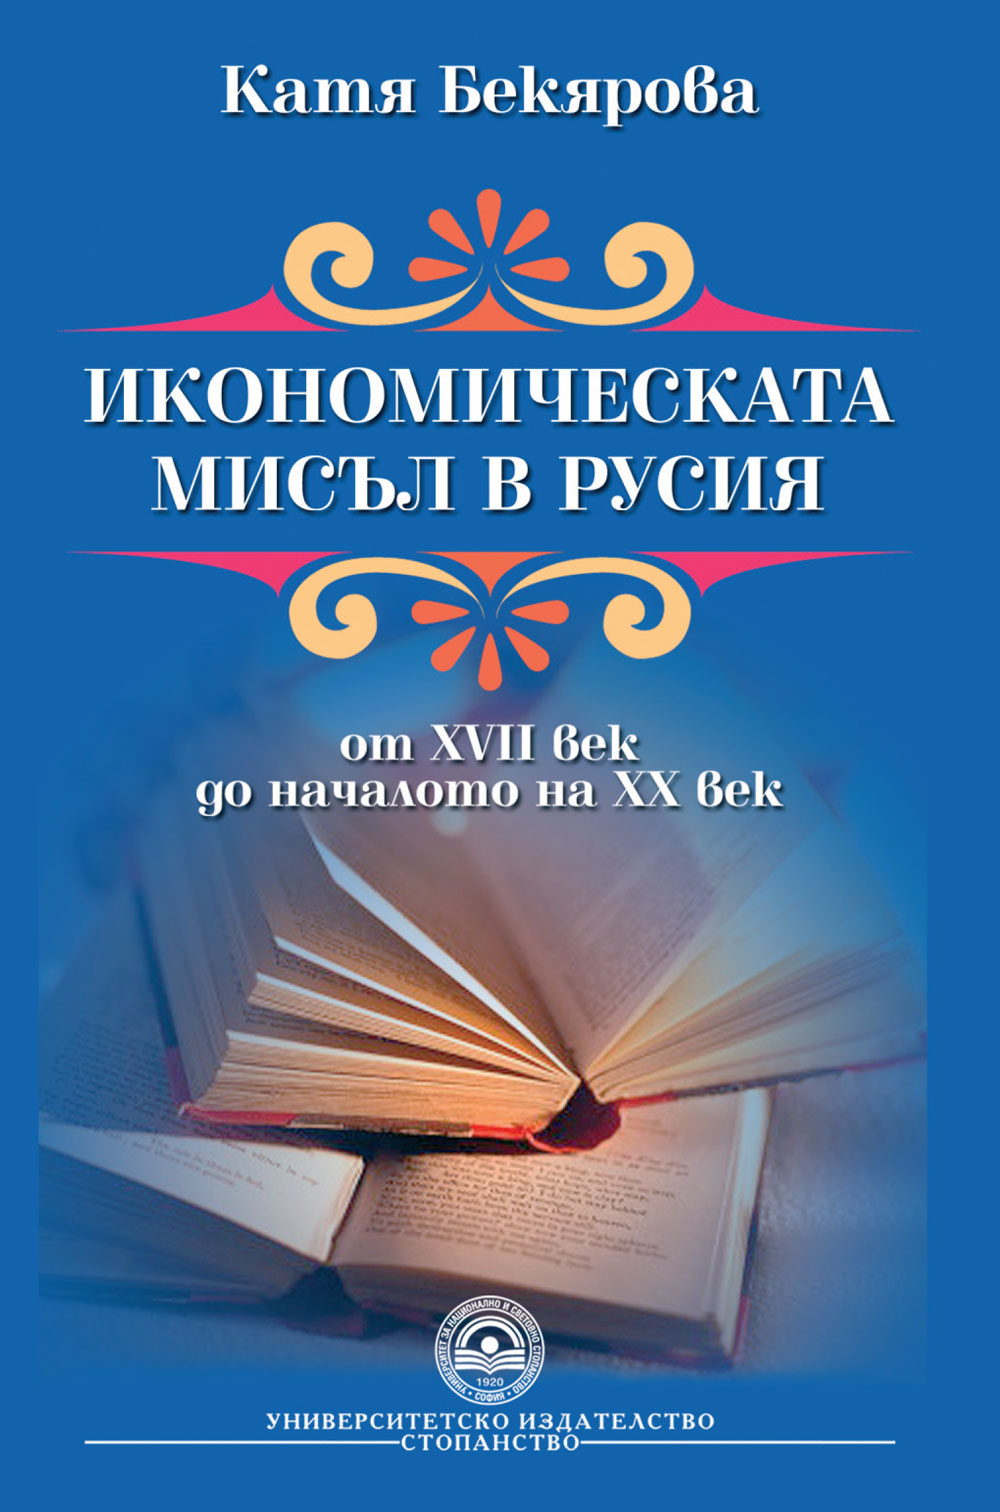 http://books.unwe.bg/wp-content/uploads/2016/01/1.Bekiarova_Ikonomicheskata.jpg